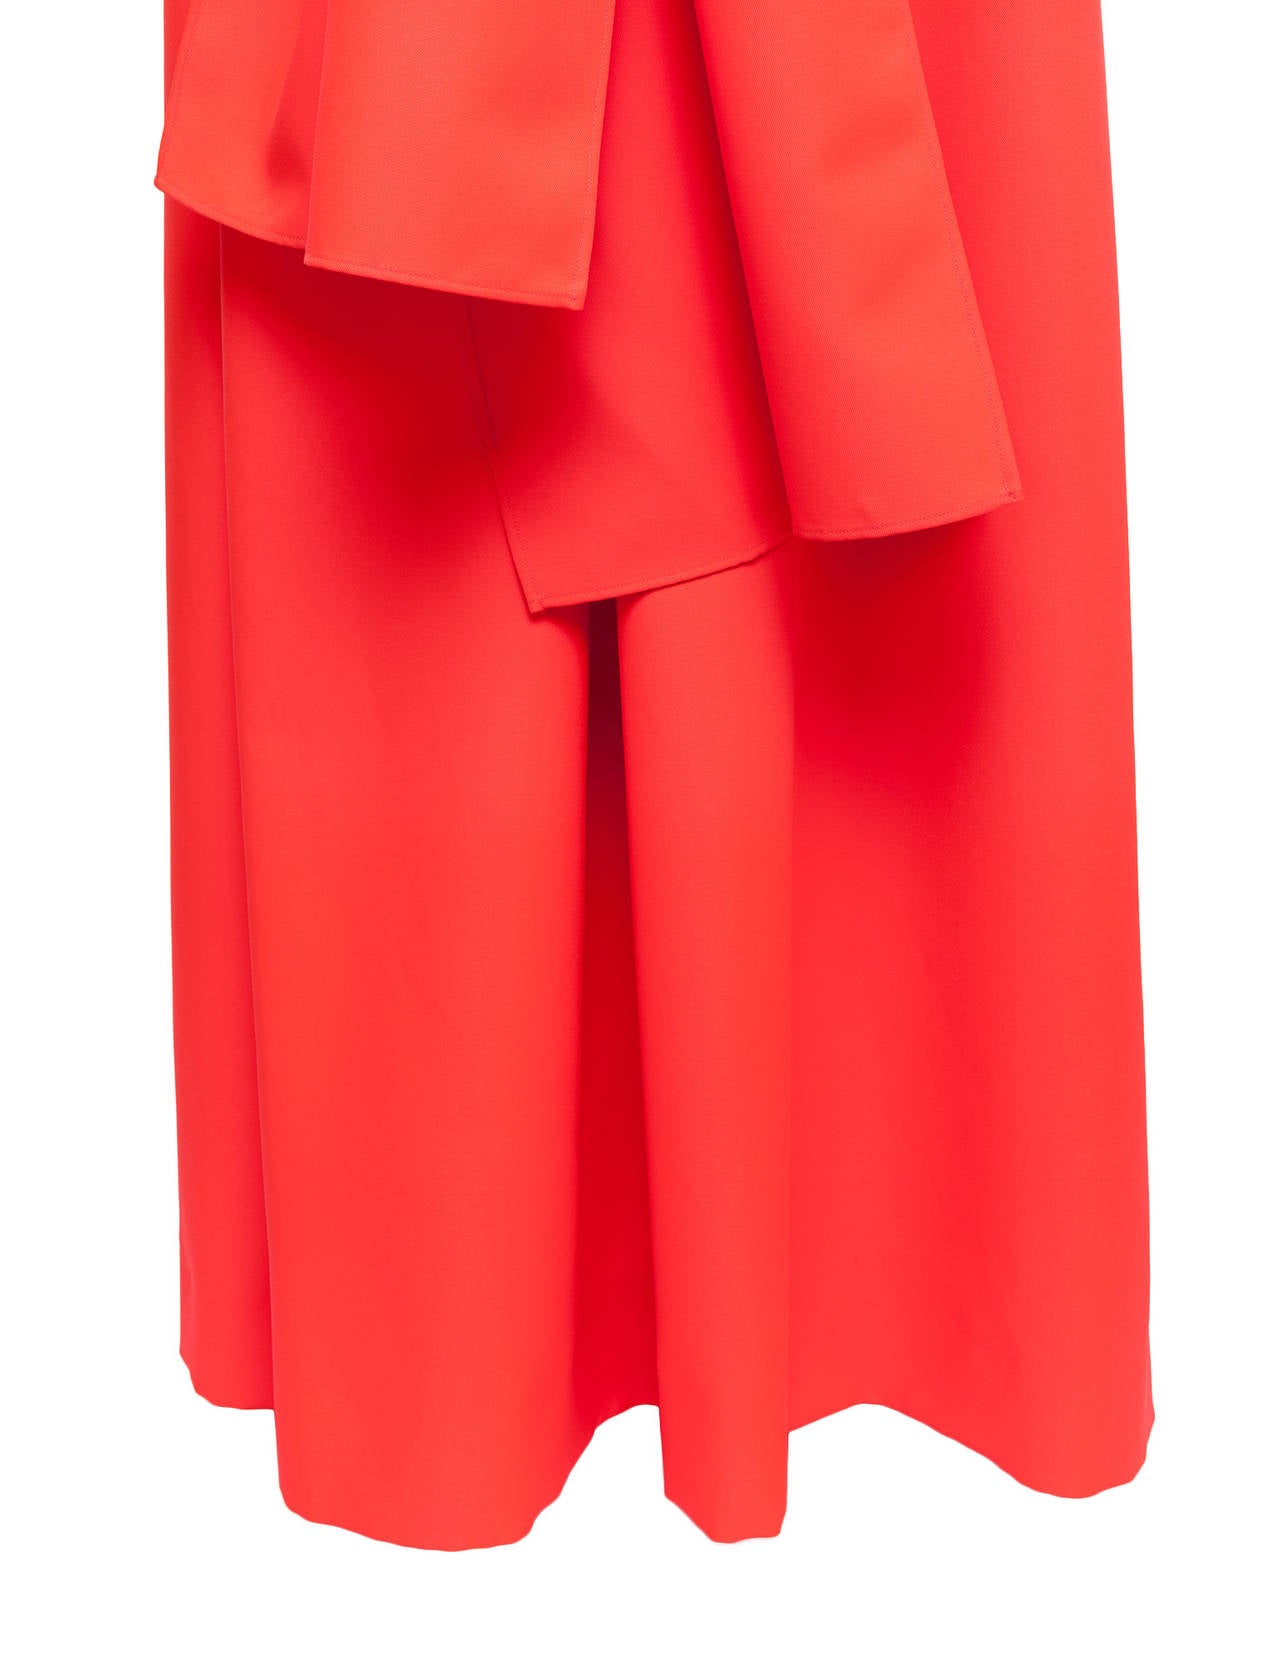 Jil Sander by Raf Simons *Trilogy Of Couture* 2009 Neon Robe, Sz. M/L 2